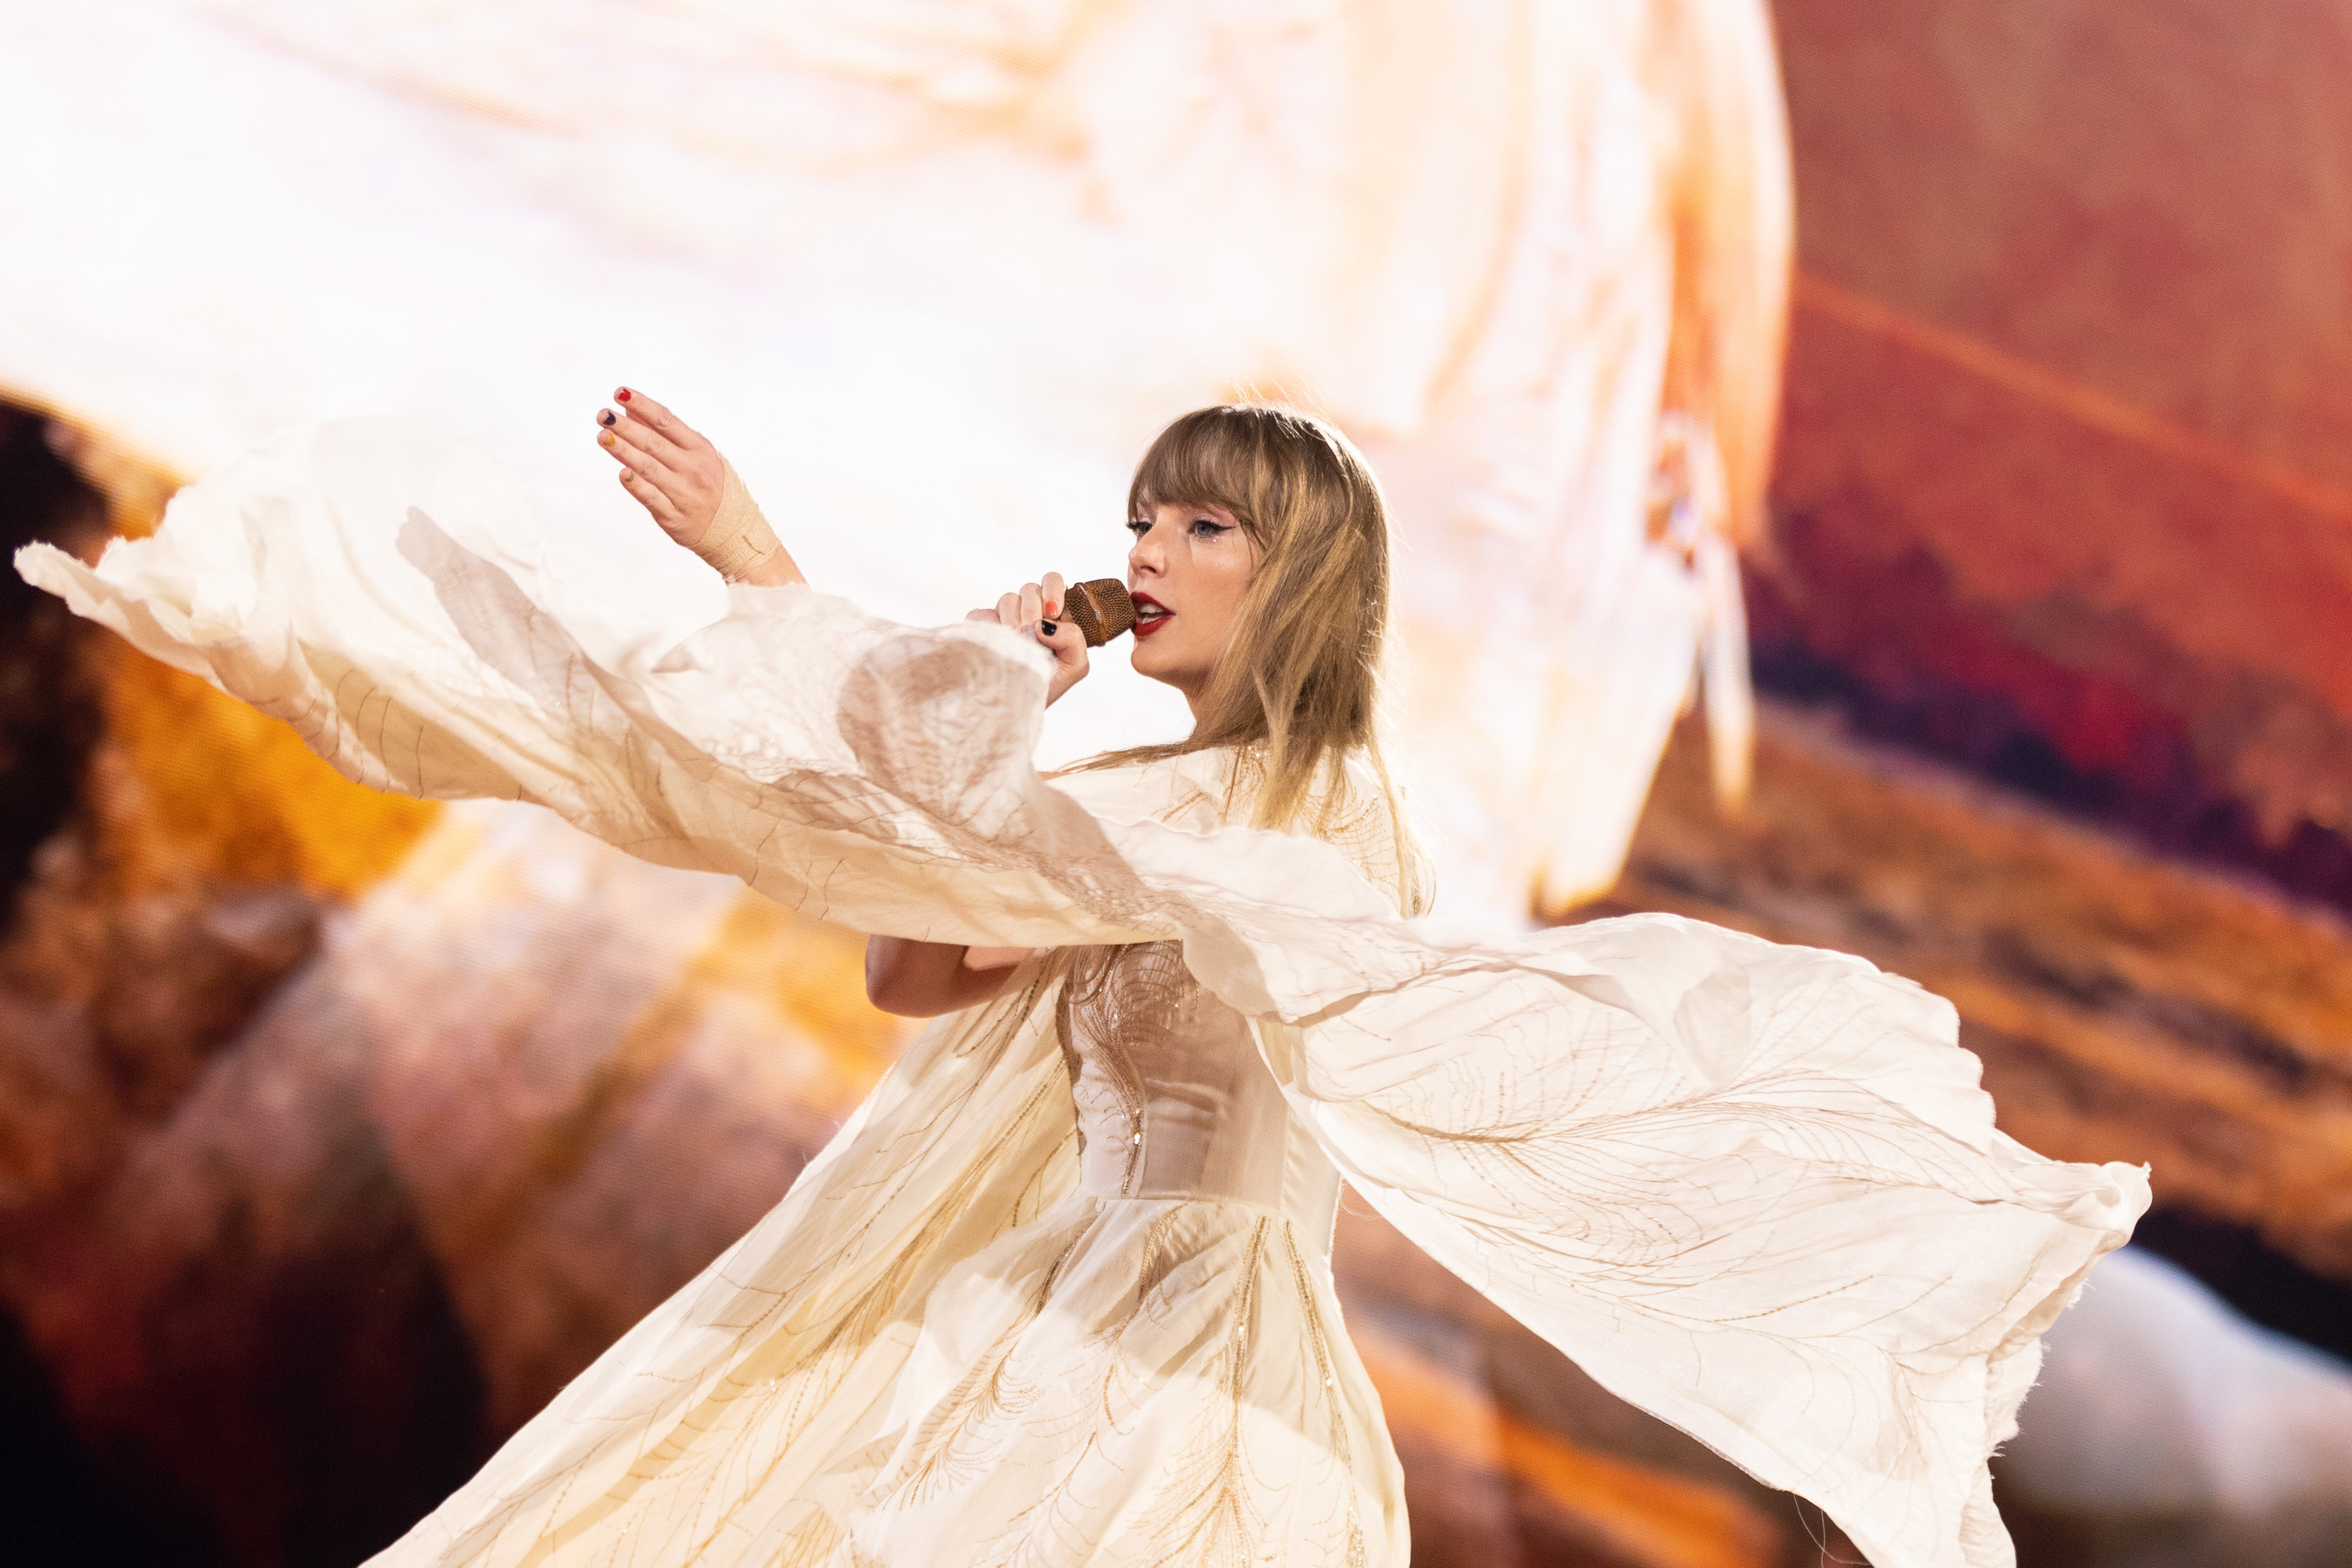 Taylor Swift wearing a white boho style dress